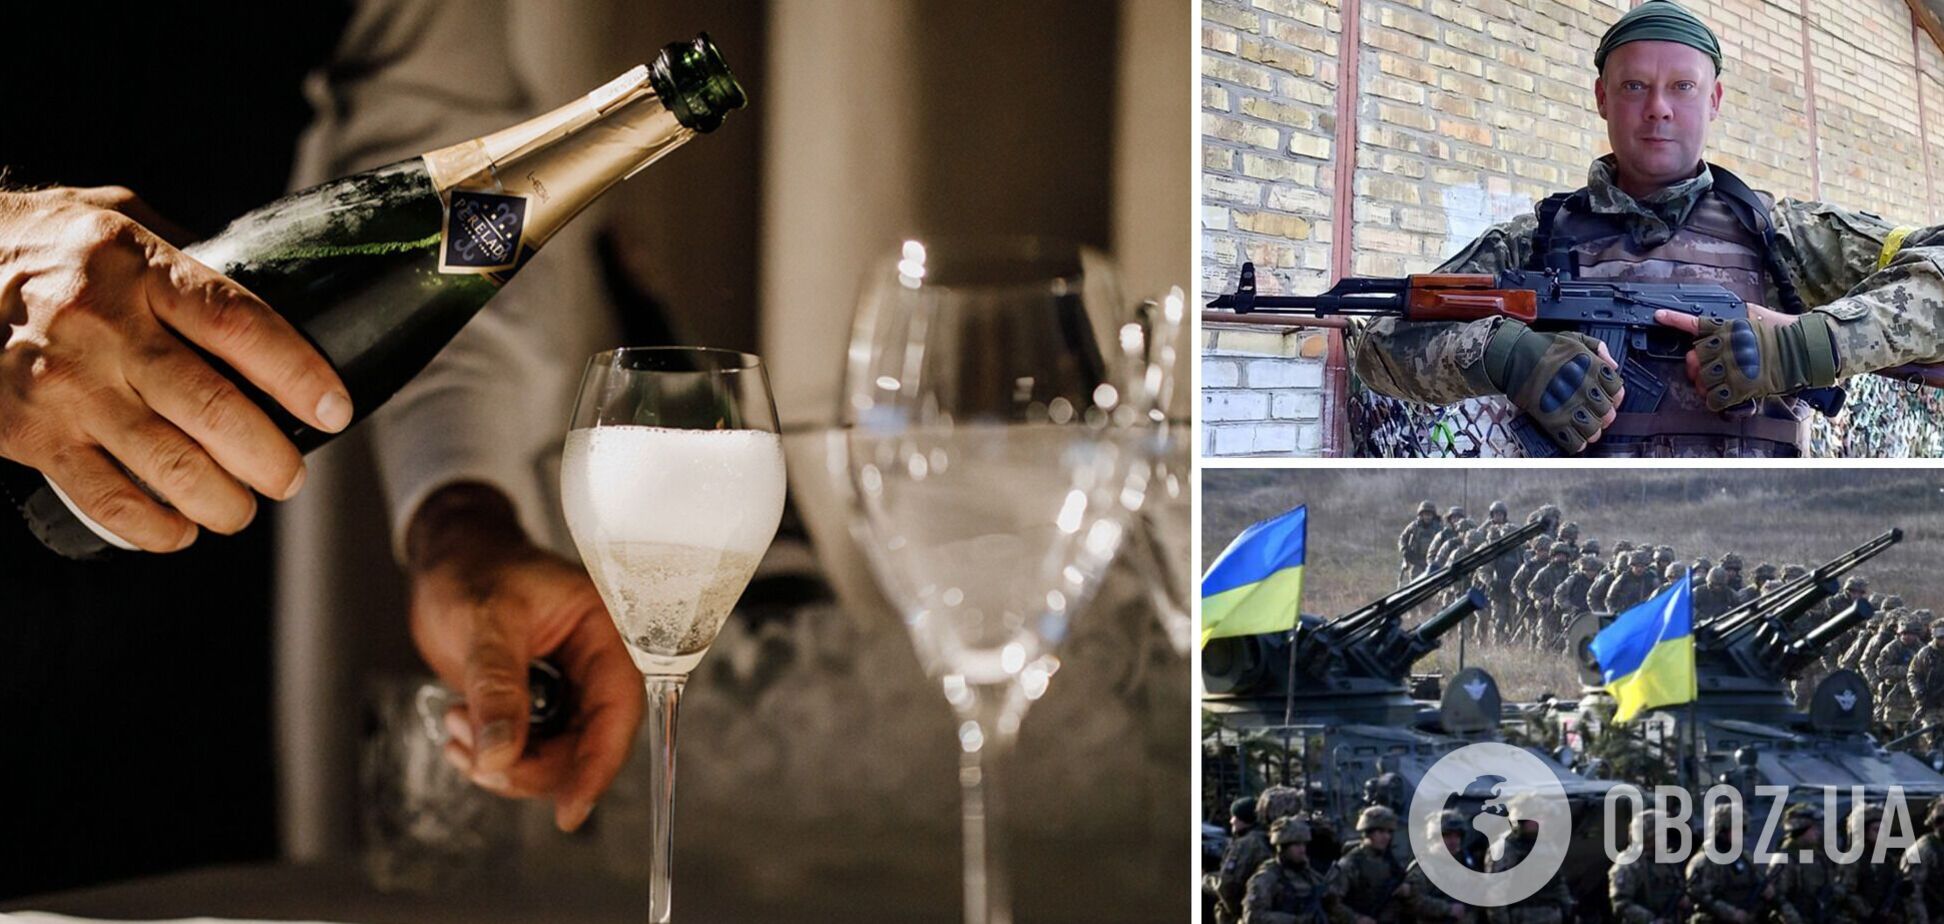 Сазонов: будем ли пить 'Крымское шампанское' в Симферополе на Новый год? Интервью